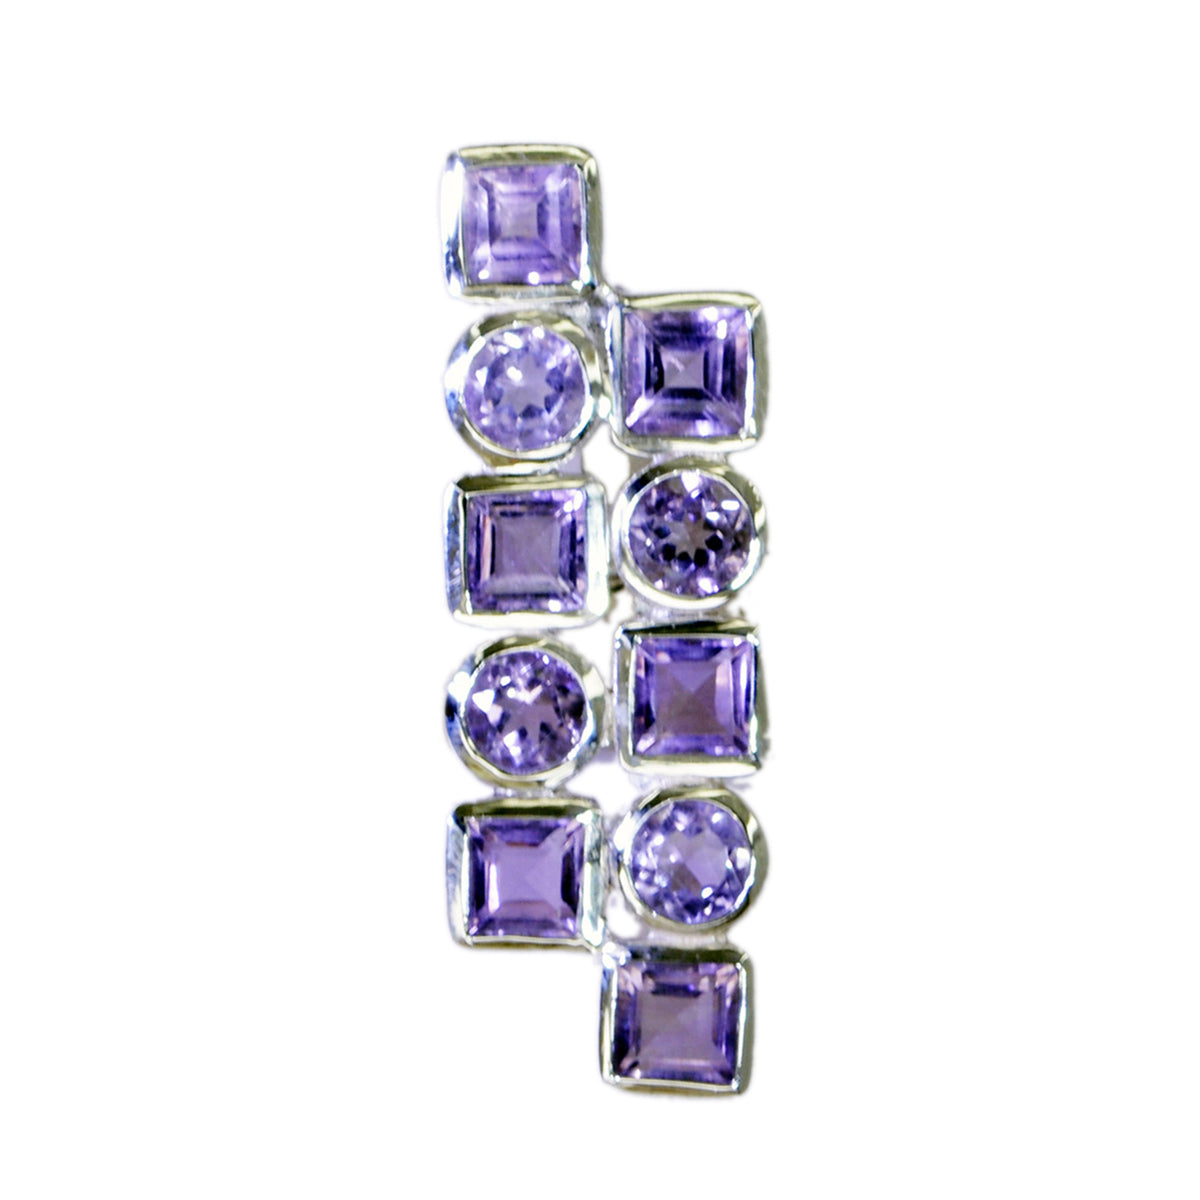 Riyo spunky gems colgante de plata de amatista púrpura multifacetado regalo para el día del boxeo